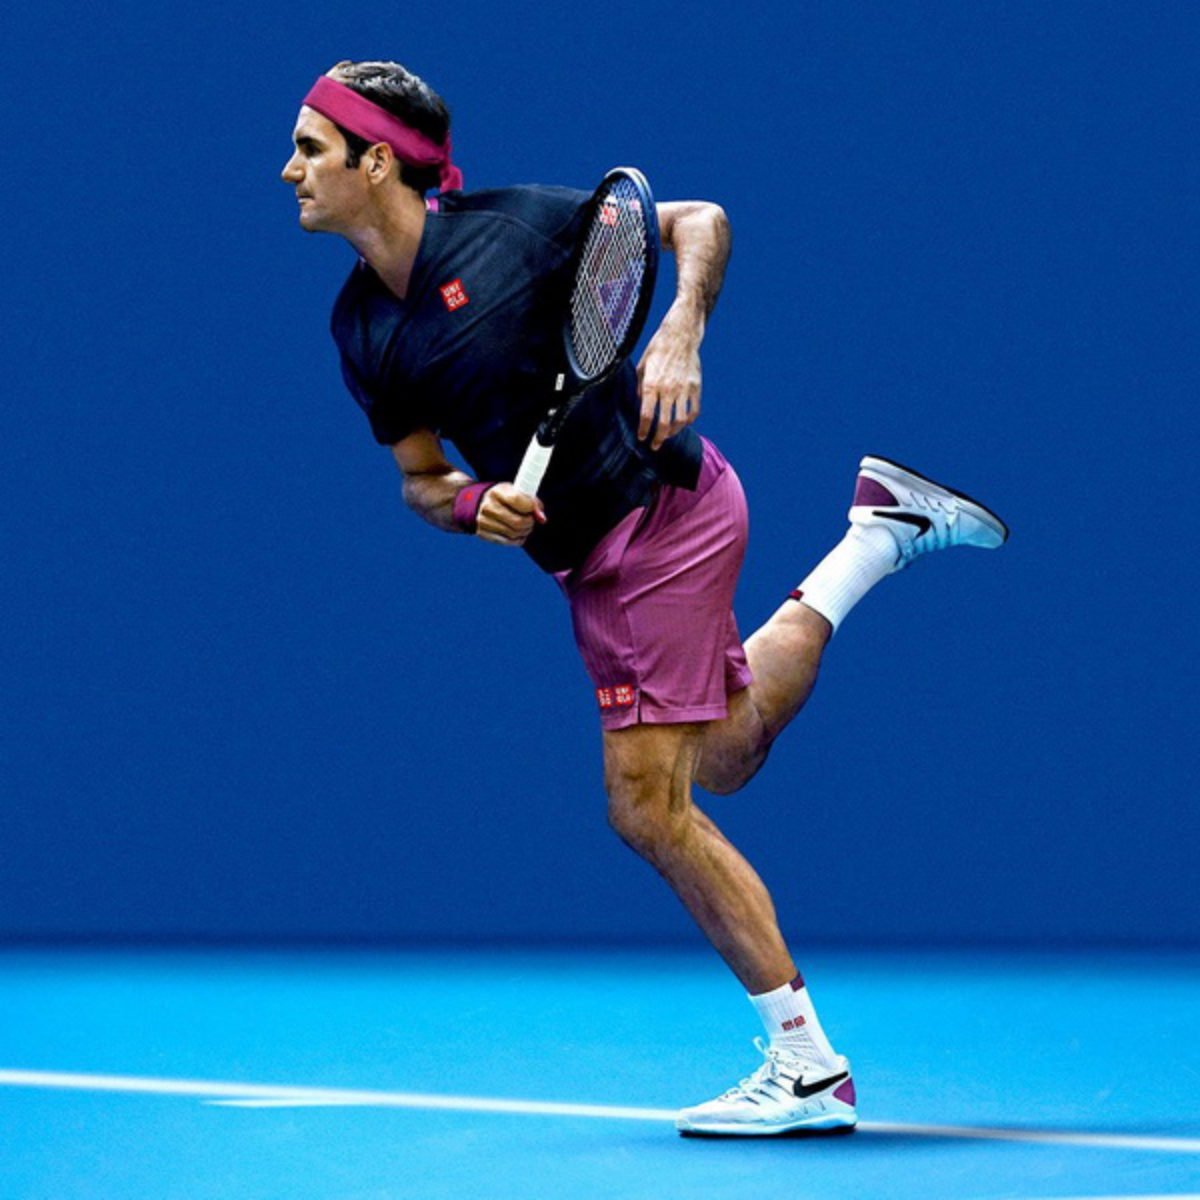 Outfit Revealed For Roger Federer For Australian Open 2020 -  EssentiallySports